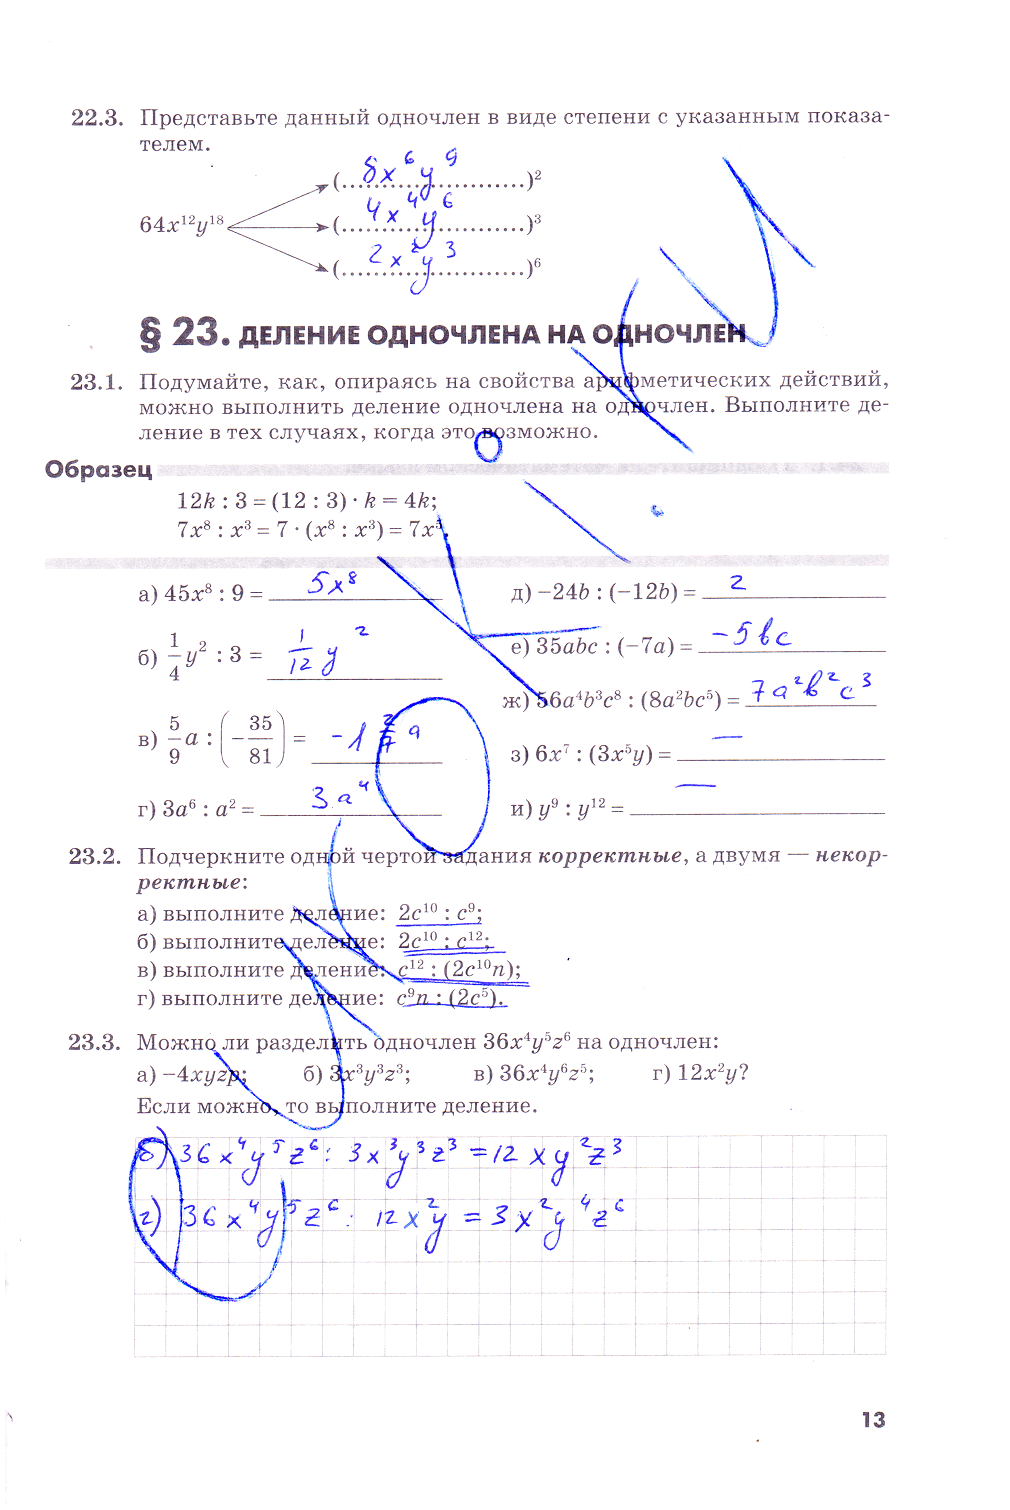 гдз 7 класс рабочая тетрадь часть 2 страница 13 алгебра Зубарева, Мильштейн